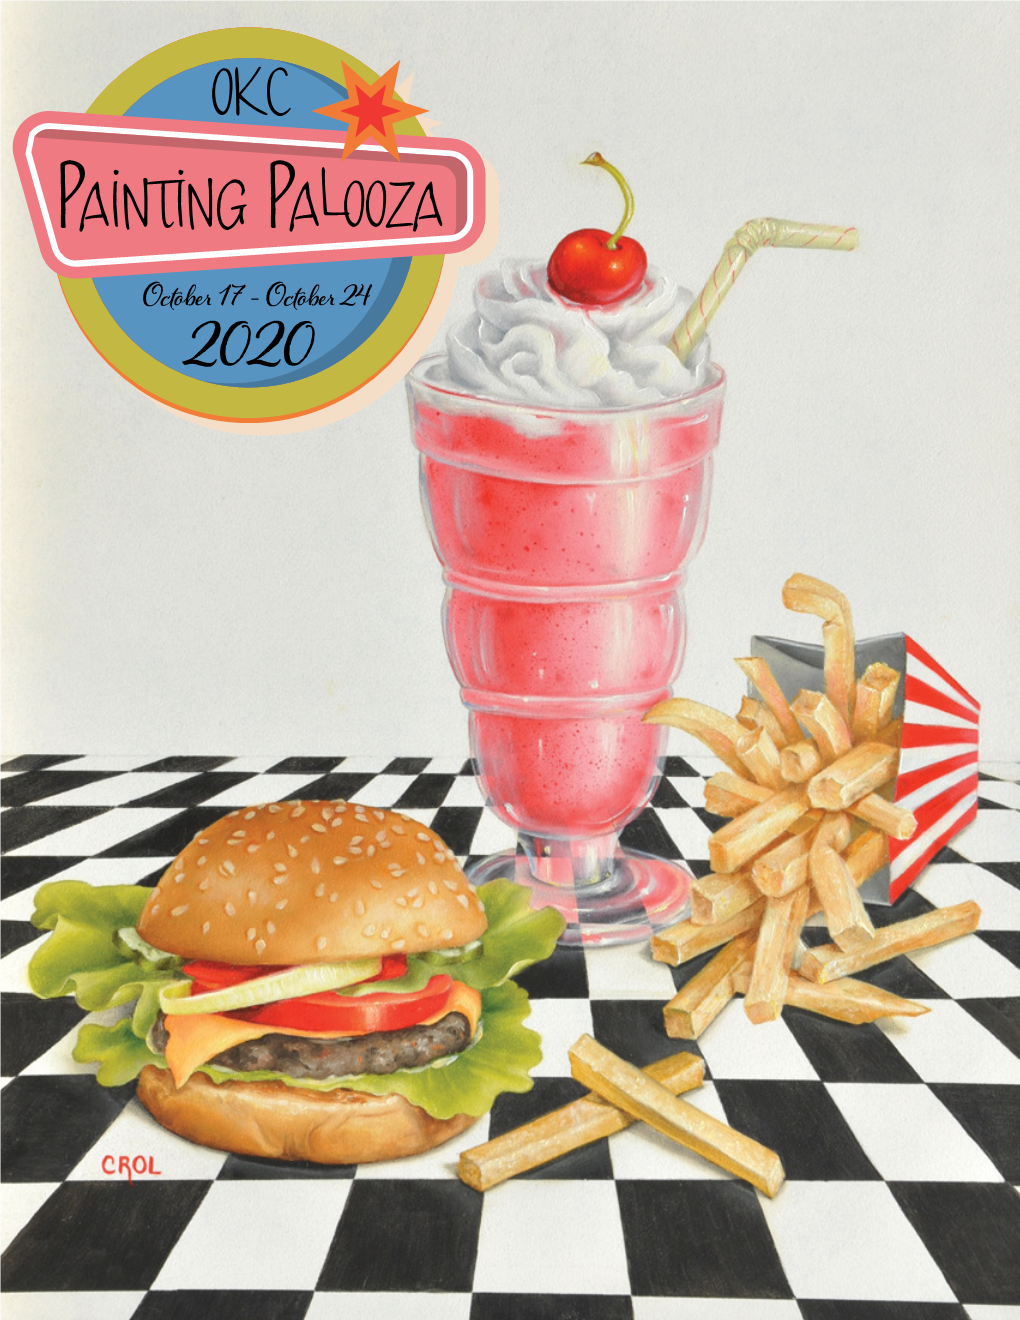 OKC Painting Palooza October 17 - October 24 2020 Fabulous Fifties October 17 - 24, 2020